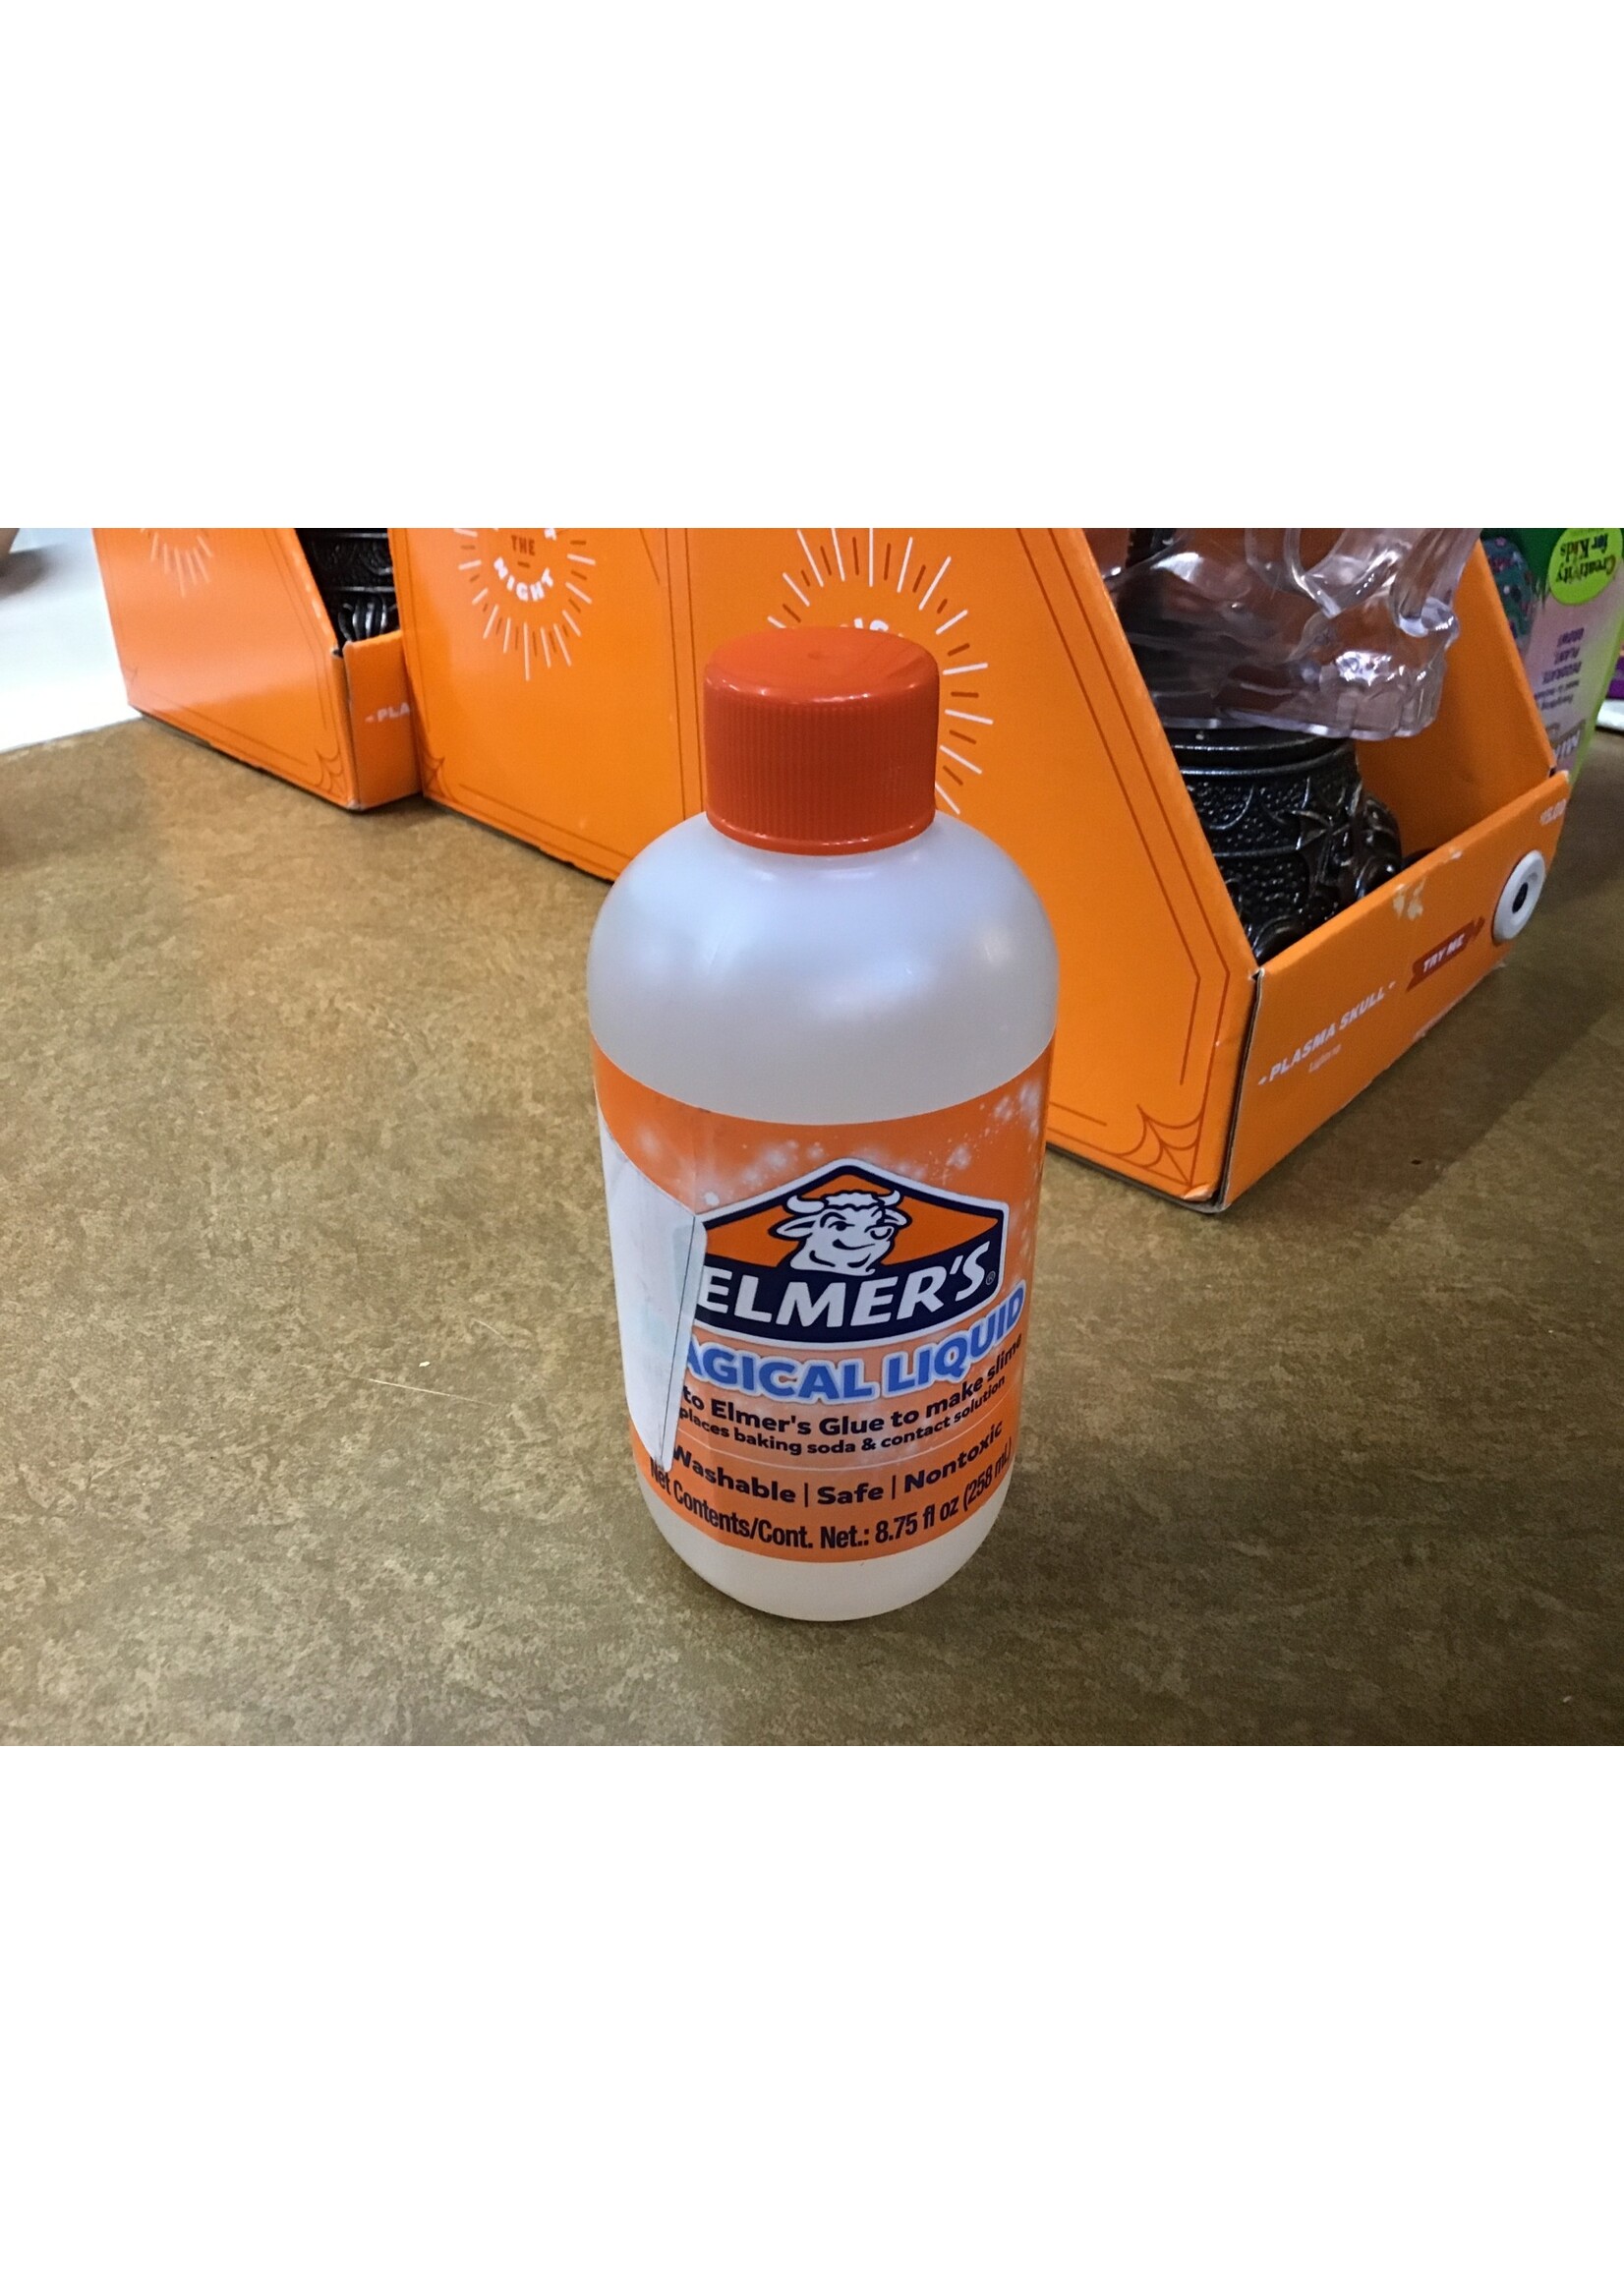 Elmer's Magical Liquid, 8.75 oz.